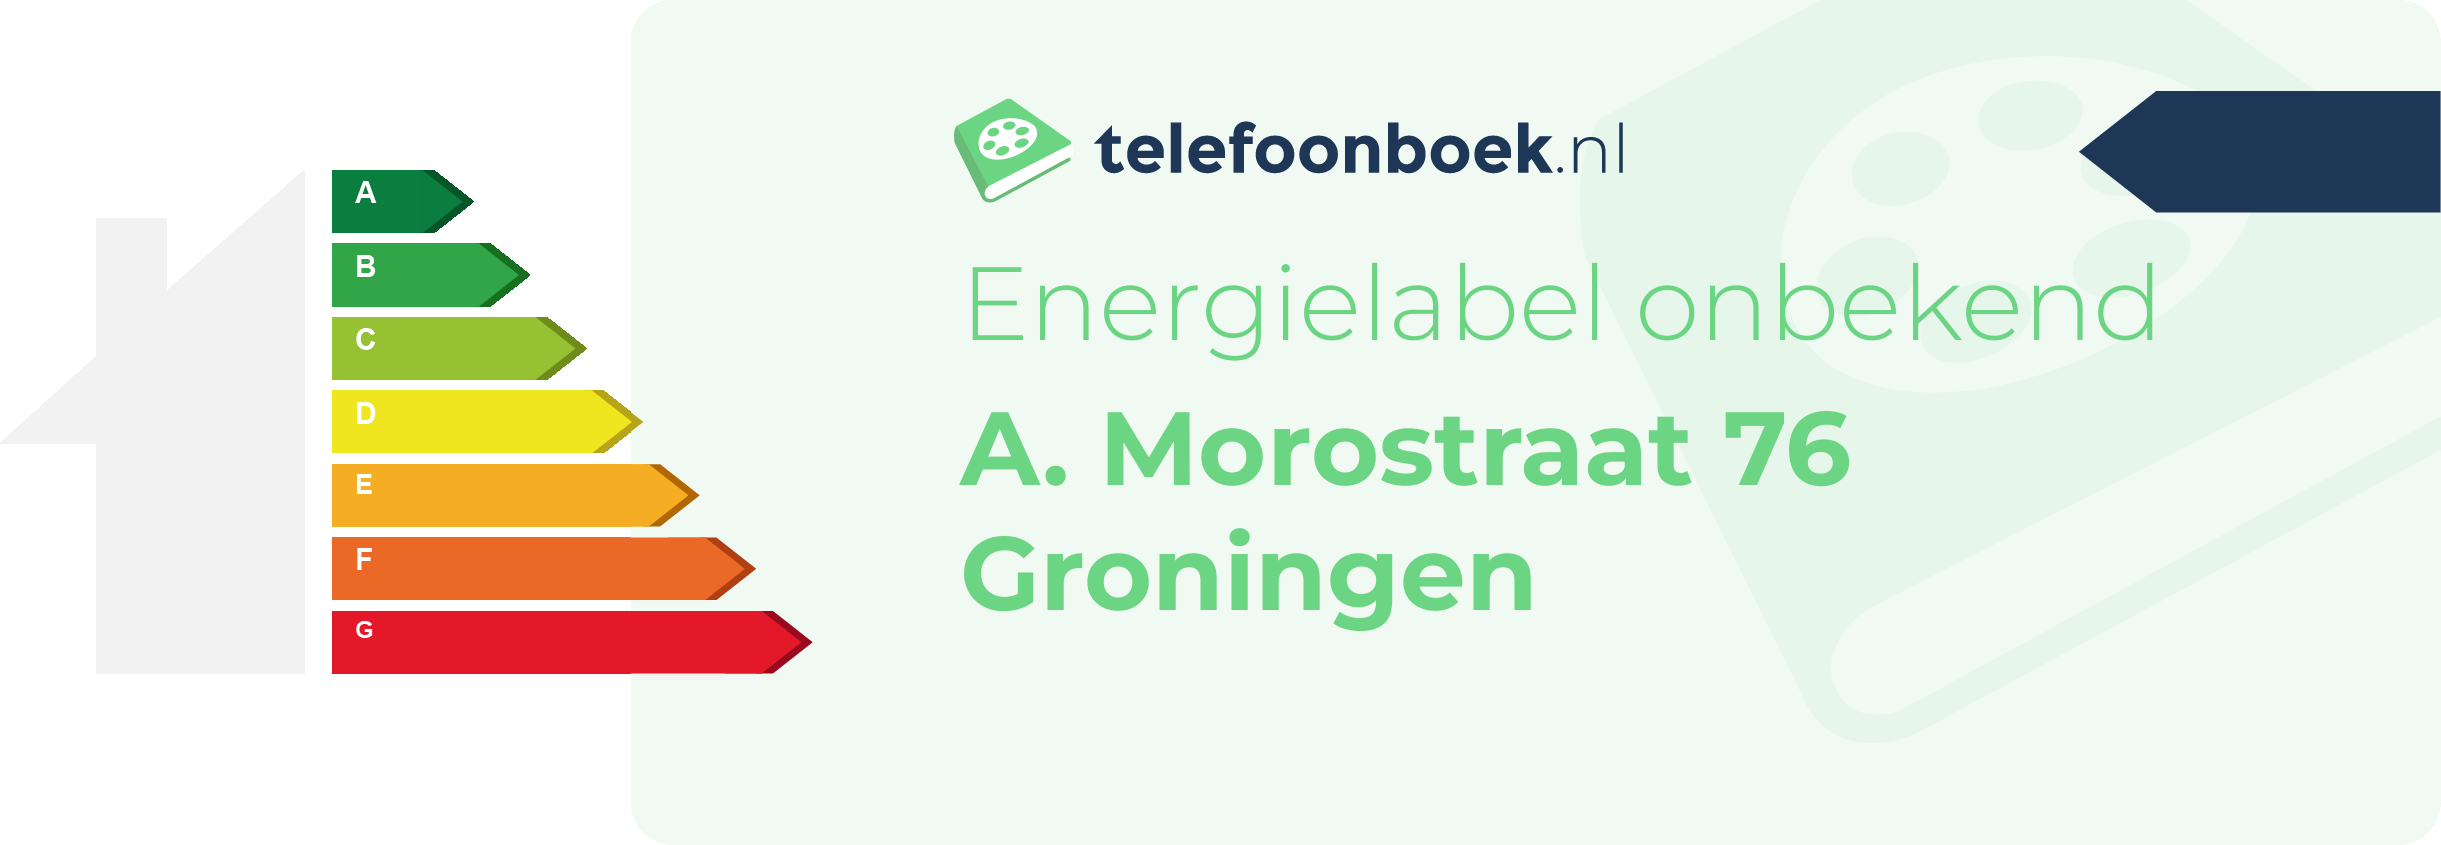 Energielabel A. Morostraat 76 Groningen